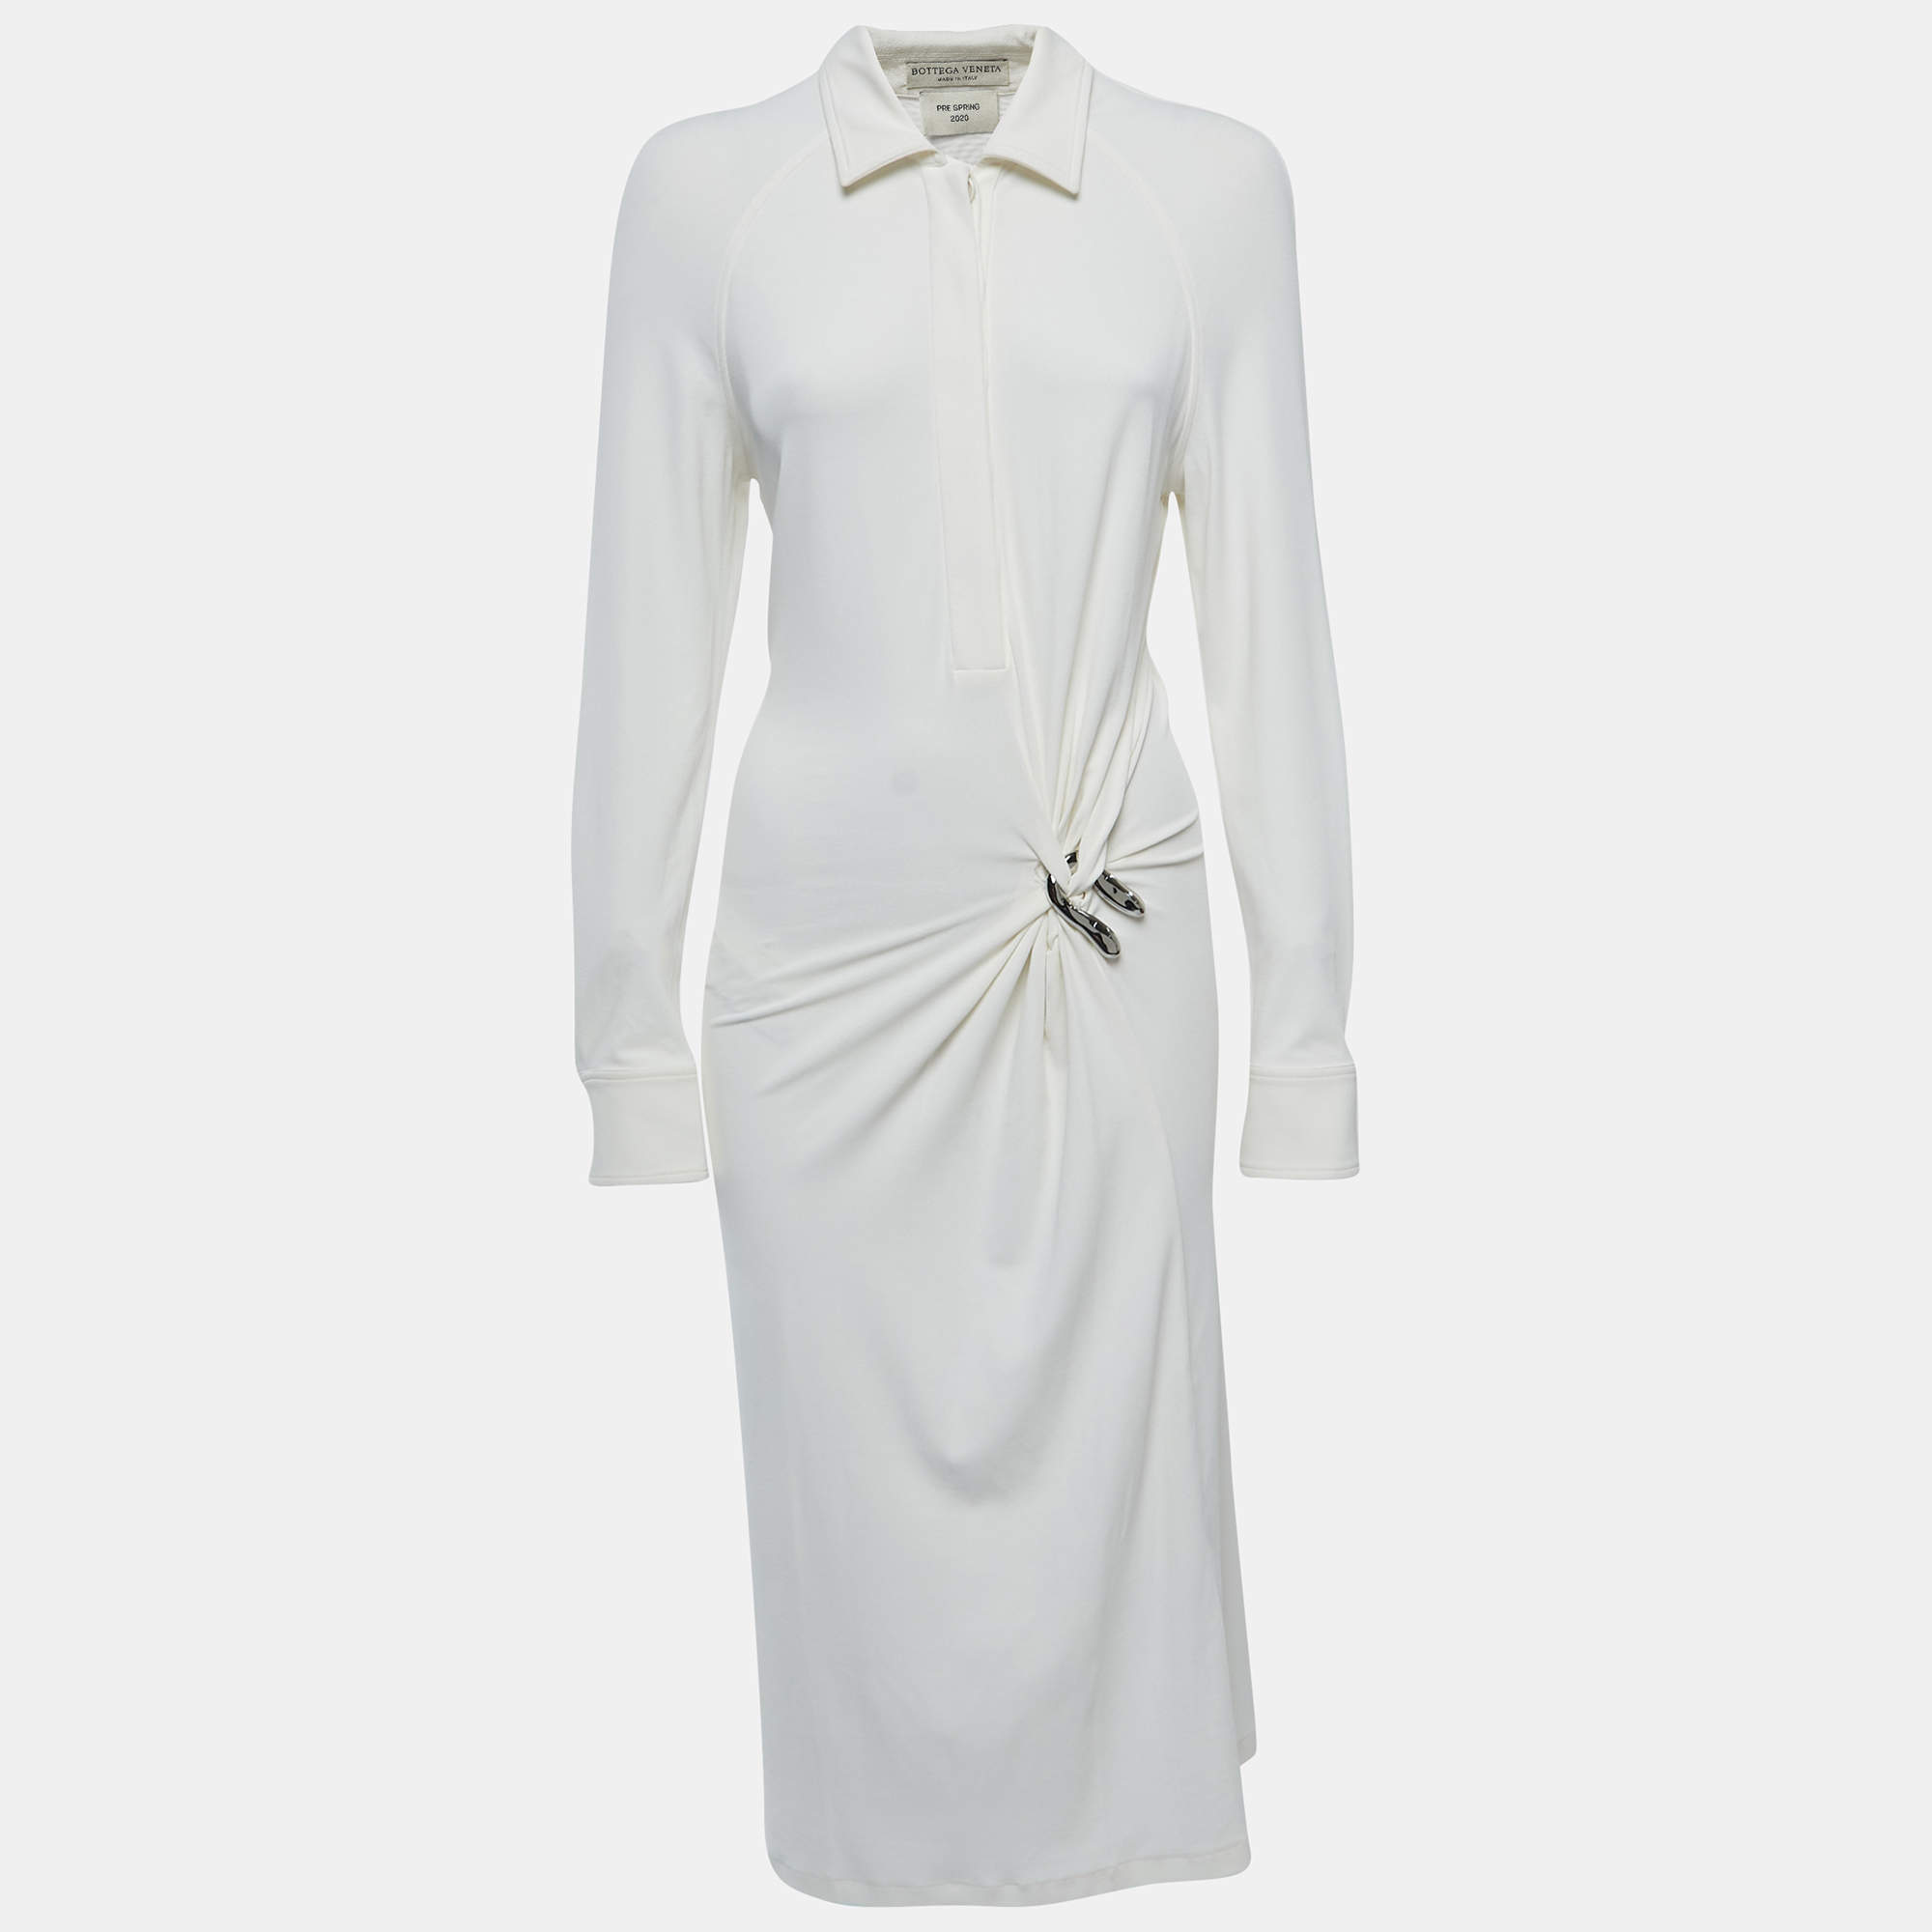 Bottega Veneta Embellished Tie-detailed Crinkled Woven Halterneck Midi Dress - Women - White Dresses - L